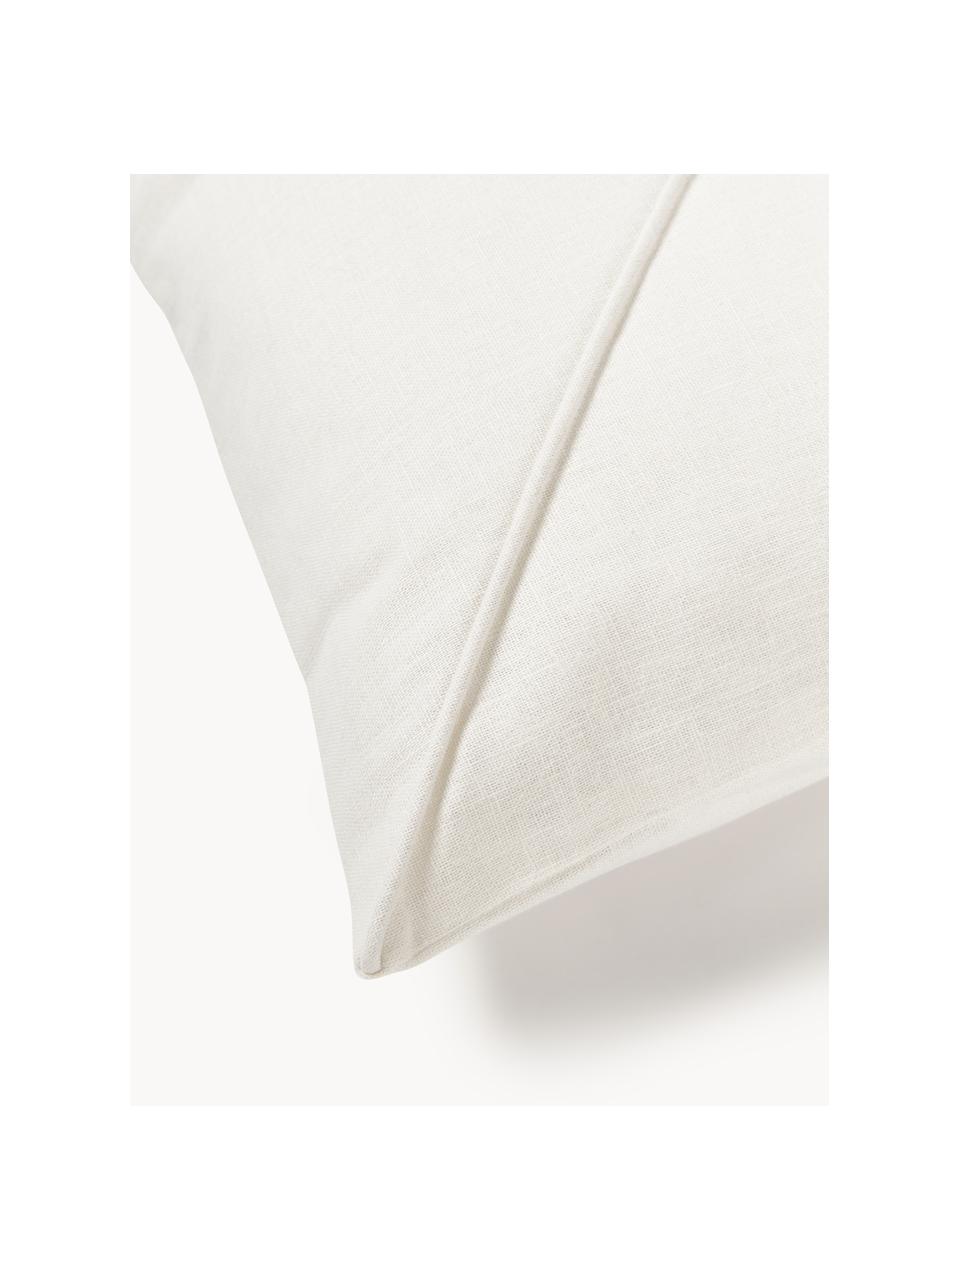 Poszewka na poduszkę z lnu Darla, 51% len, 49% bawełna, Biały, S 45 x D 45 cm